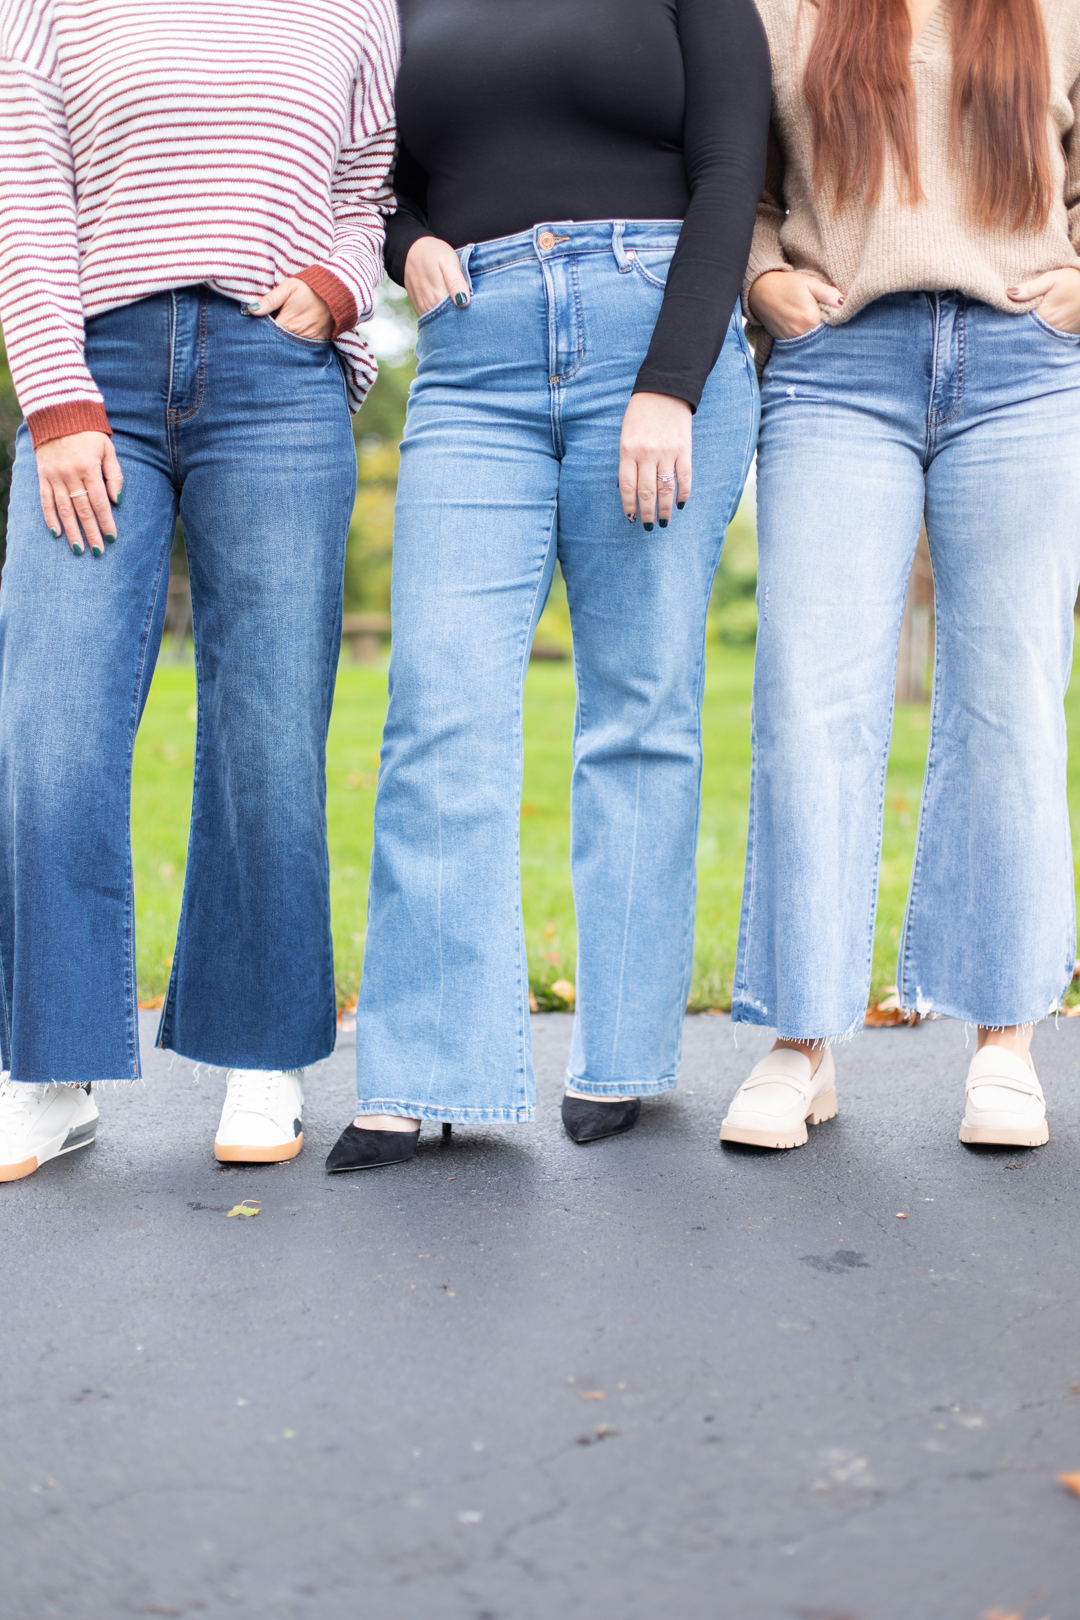 Wide Leg Jeans For Women